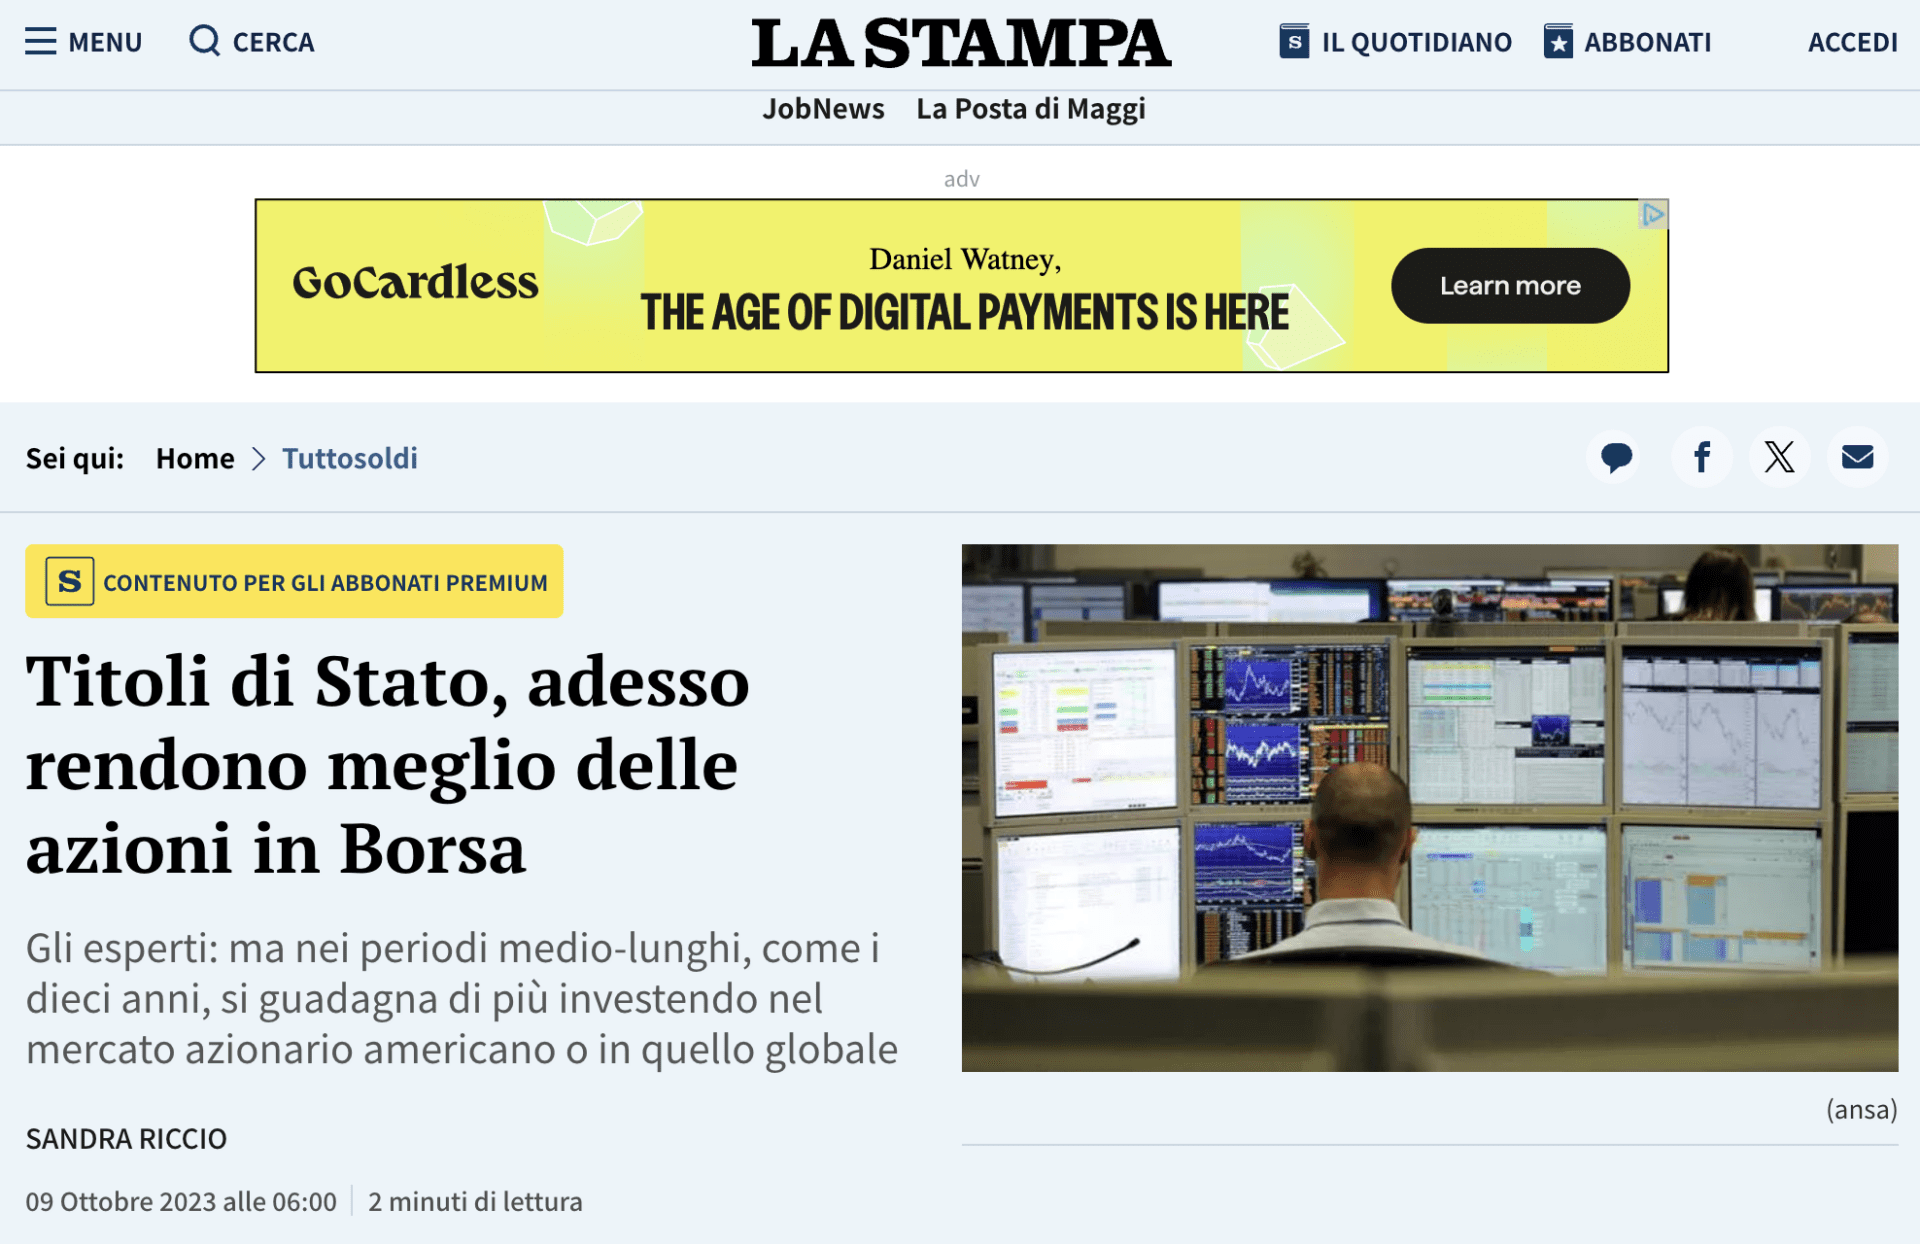 9 October 2023: Tuttosoldi, La Stampa, ‘Titoli di Stato, adesso rendono meglio delle azioni in Borsa’